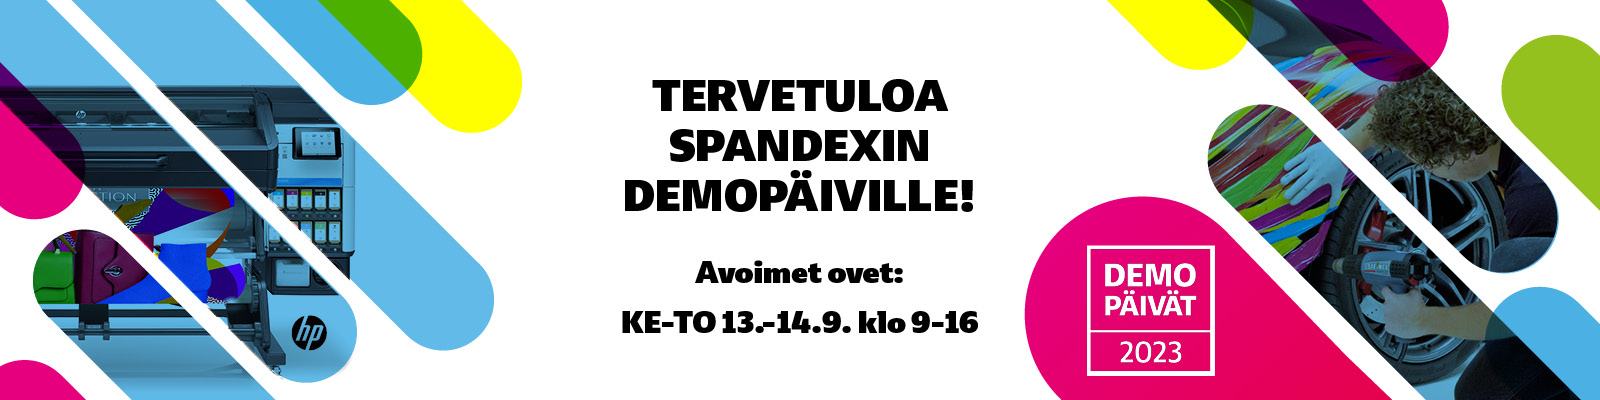 Tervetuloa Spandexin Demopäiville 13.–14. 9.2023!